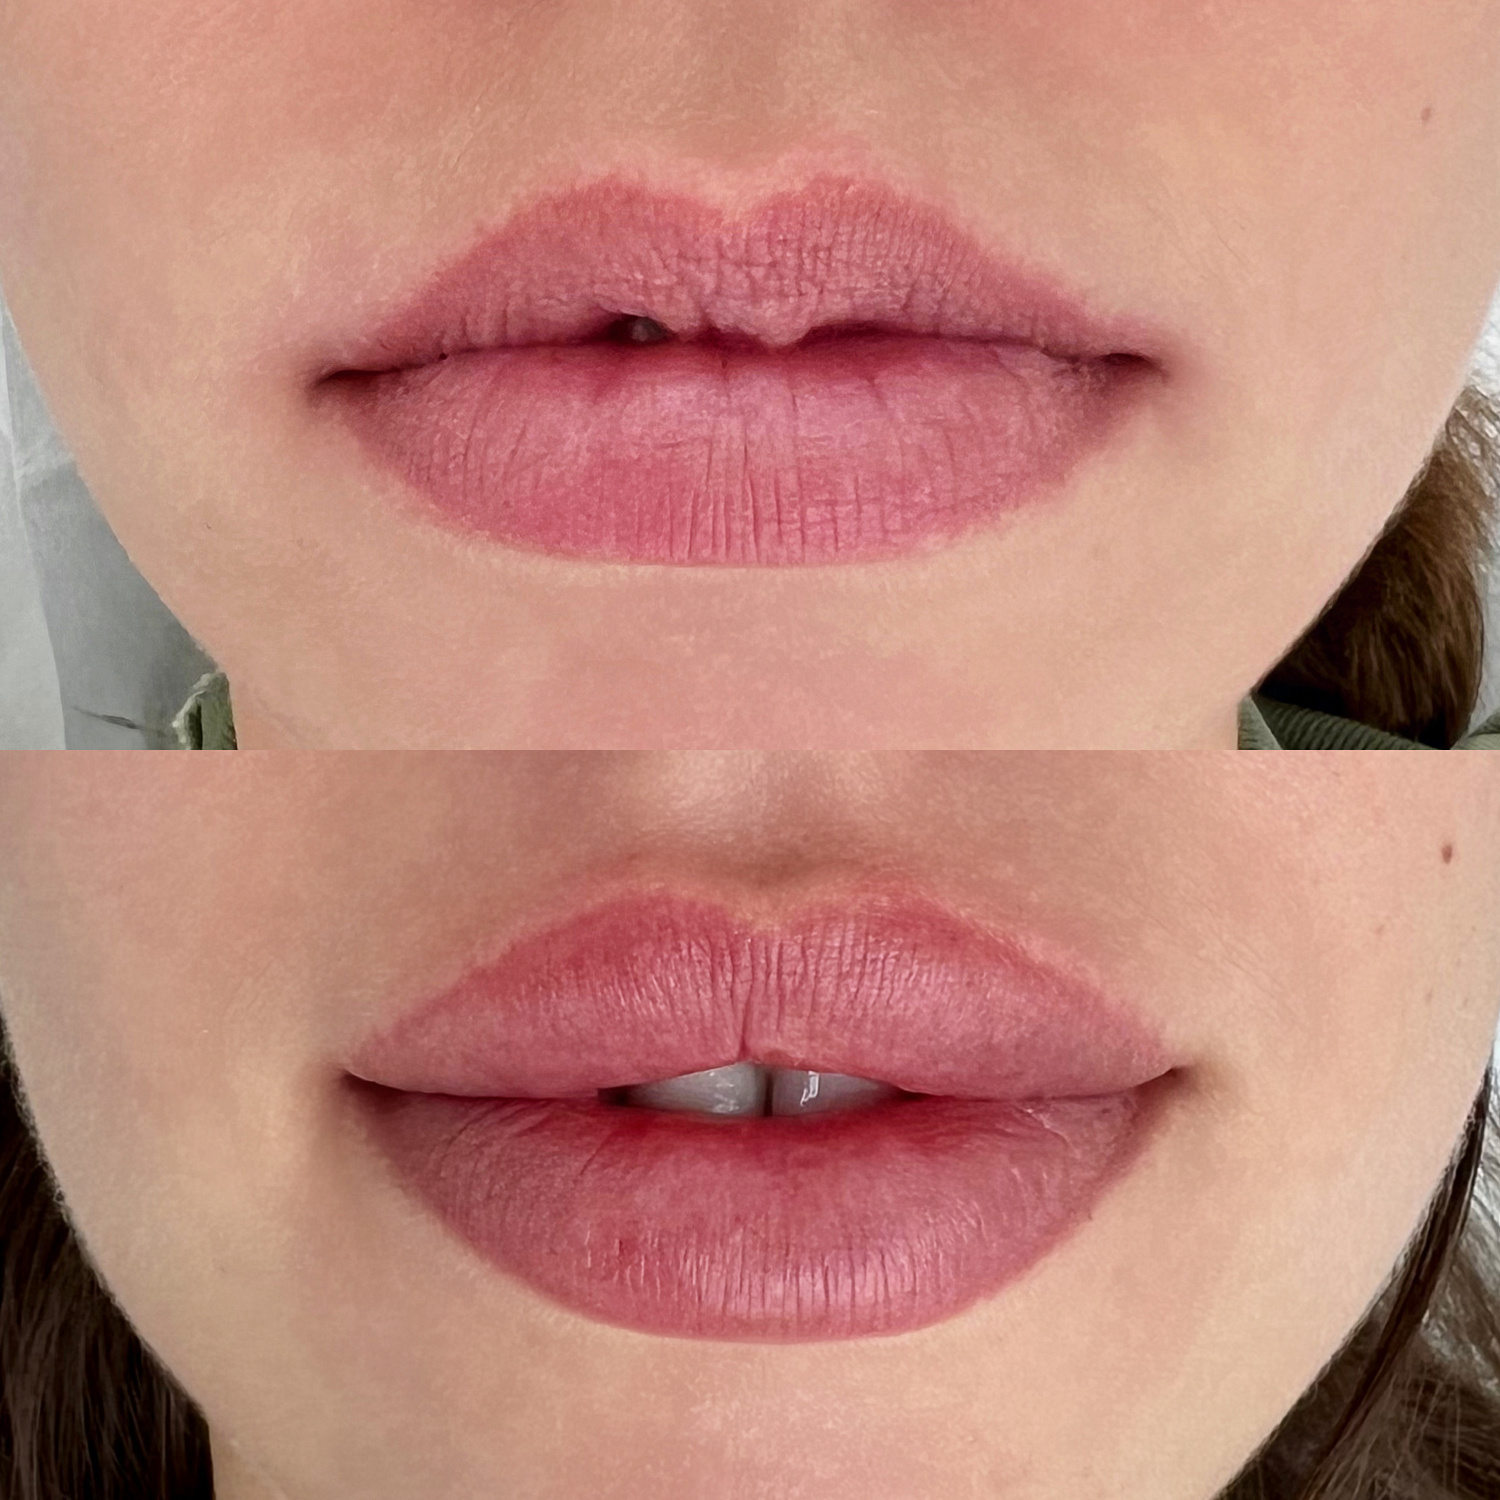 Контурная пластика губ препаратом ART FILLER LIPS в косметологической клинике Re:new